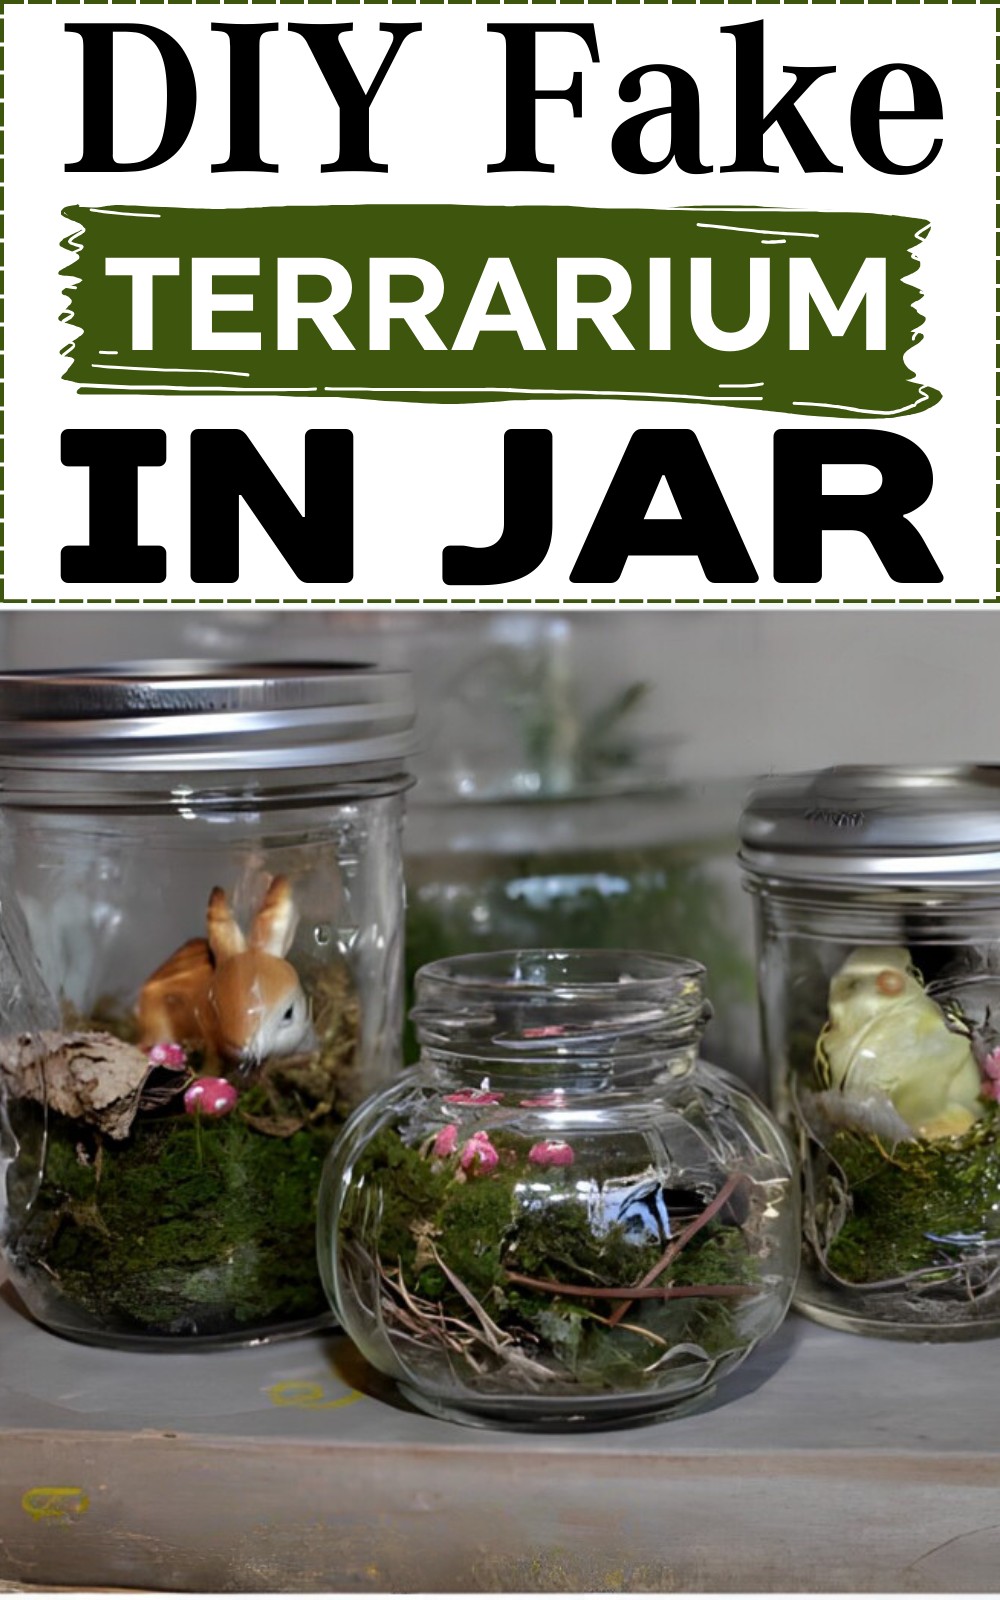 DIY Fake Terrarium In Jar